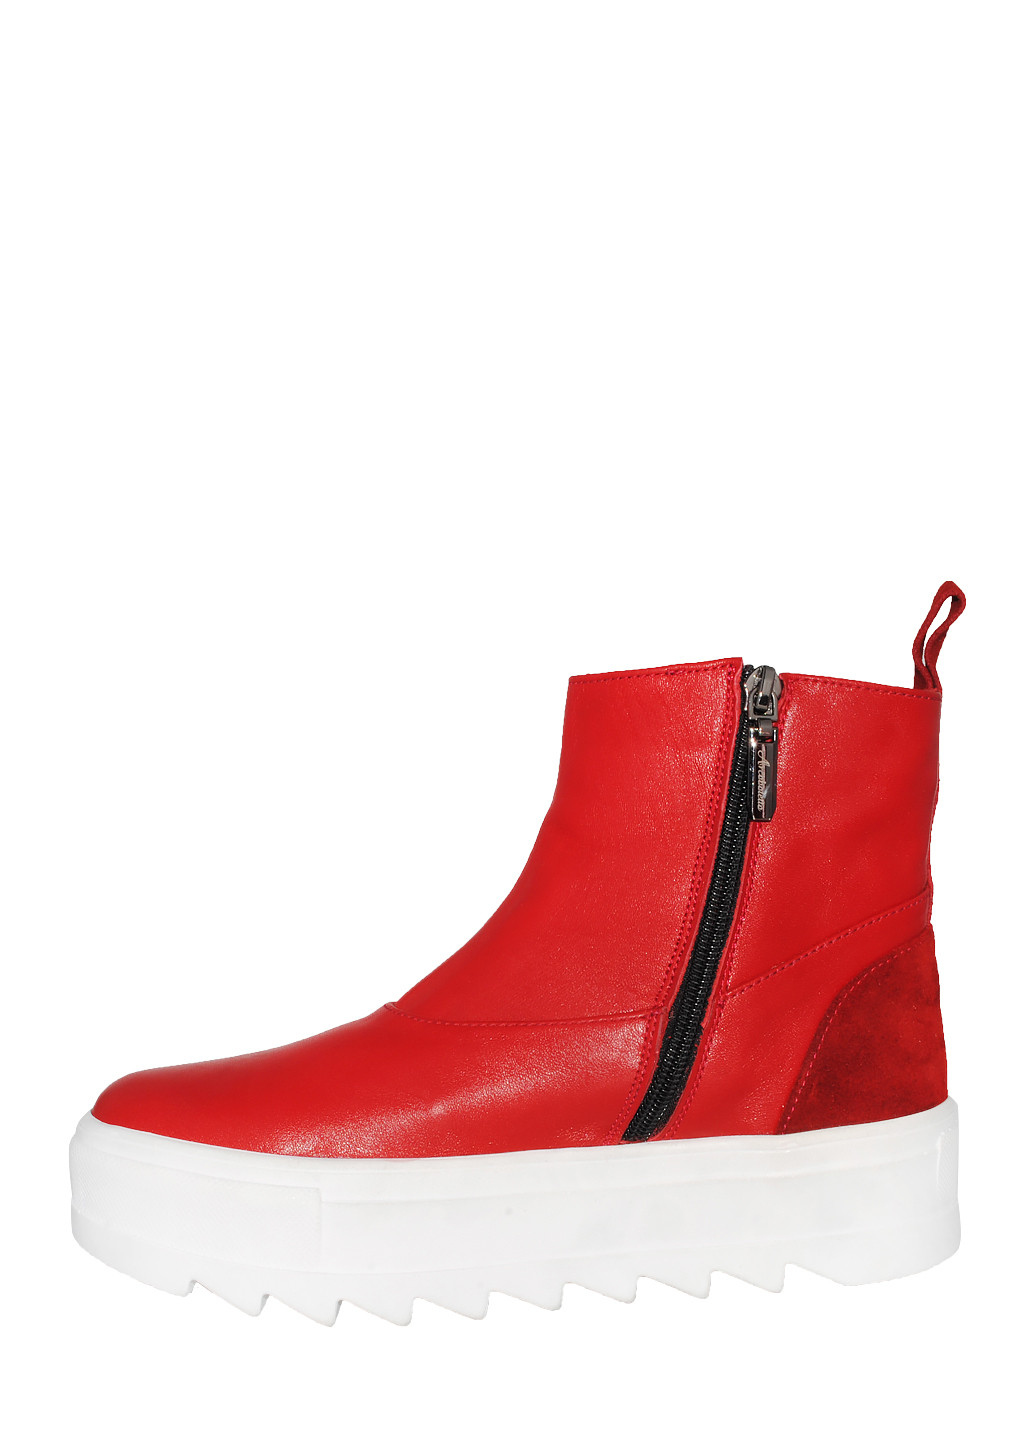 Зимние ботинки r632049 красный Arcoboletto